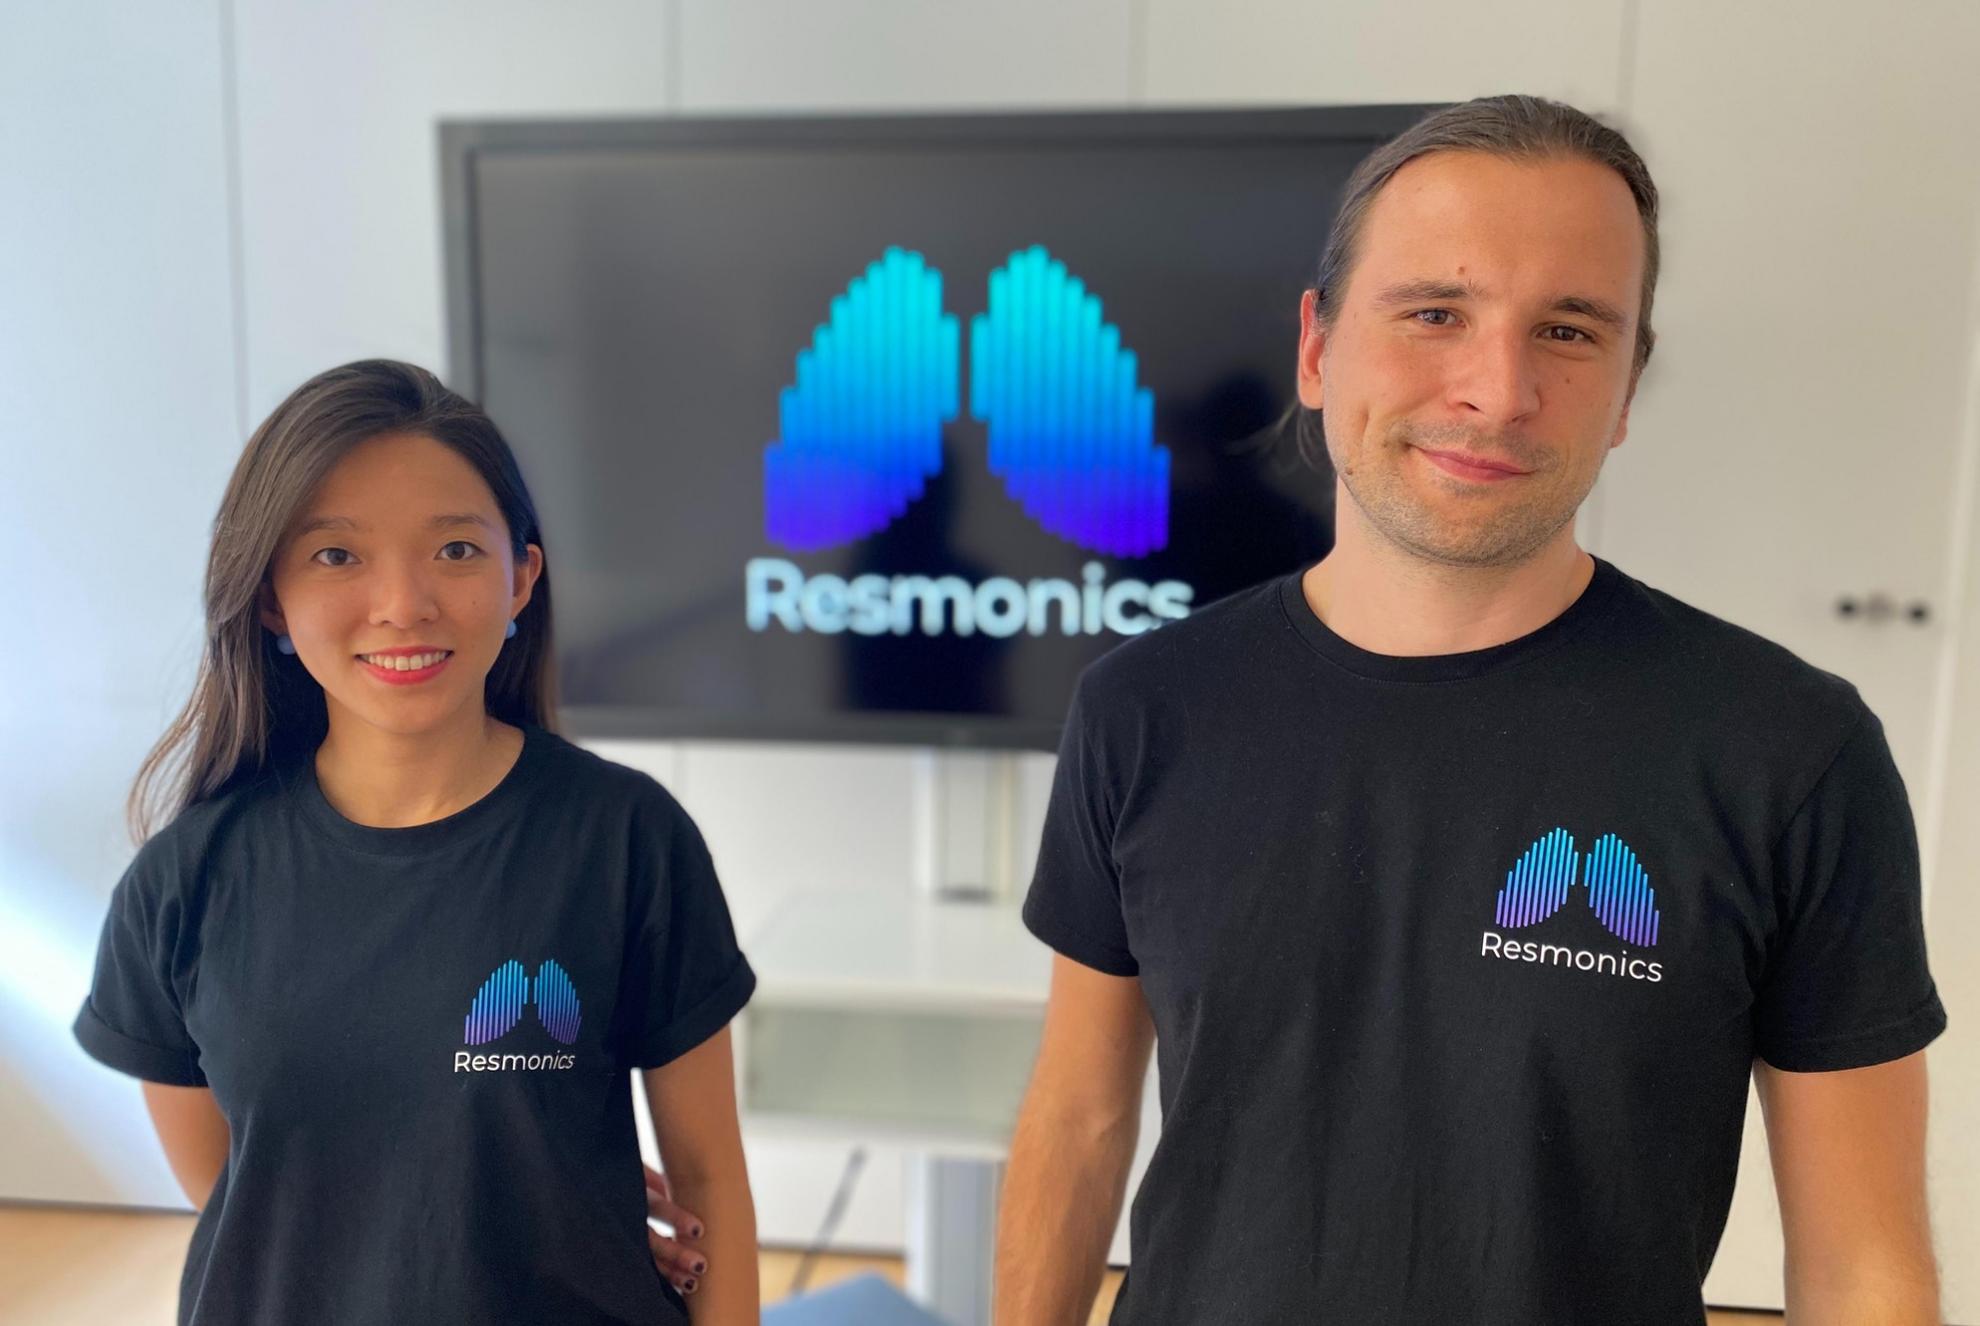 Resmonics founders Dr Iris Shih and Dr Peter Tinschert